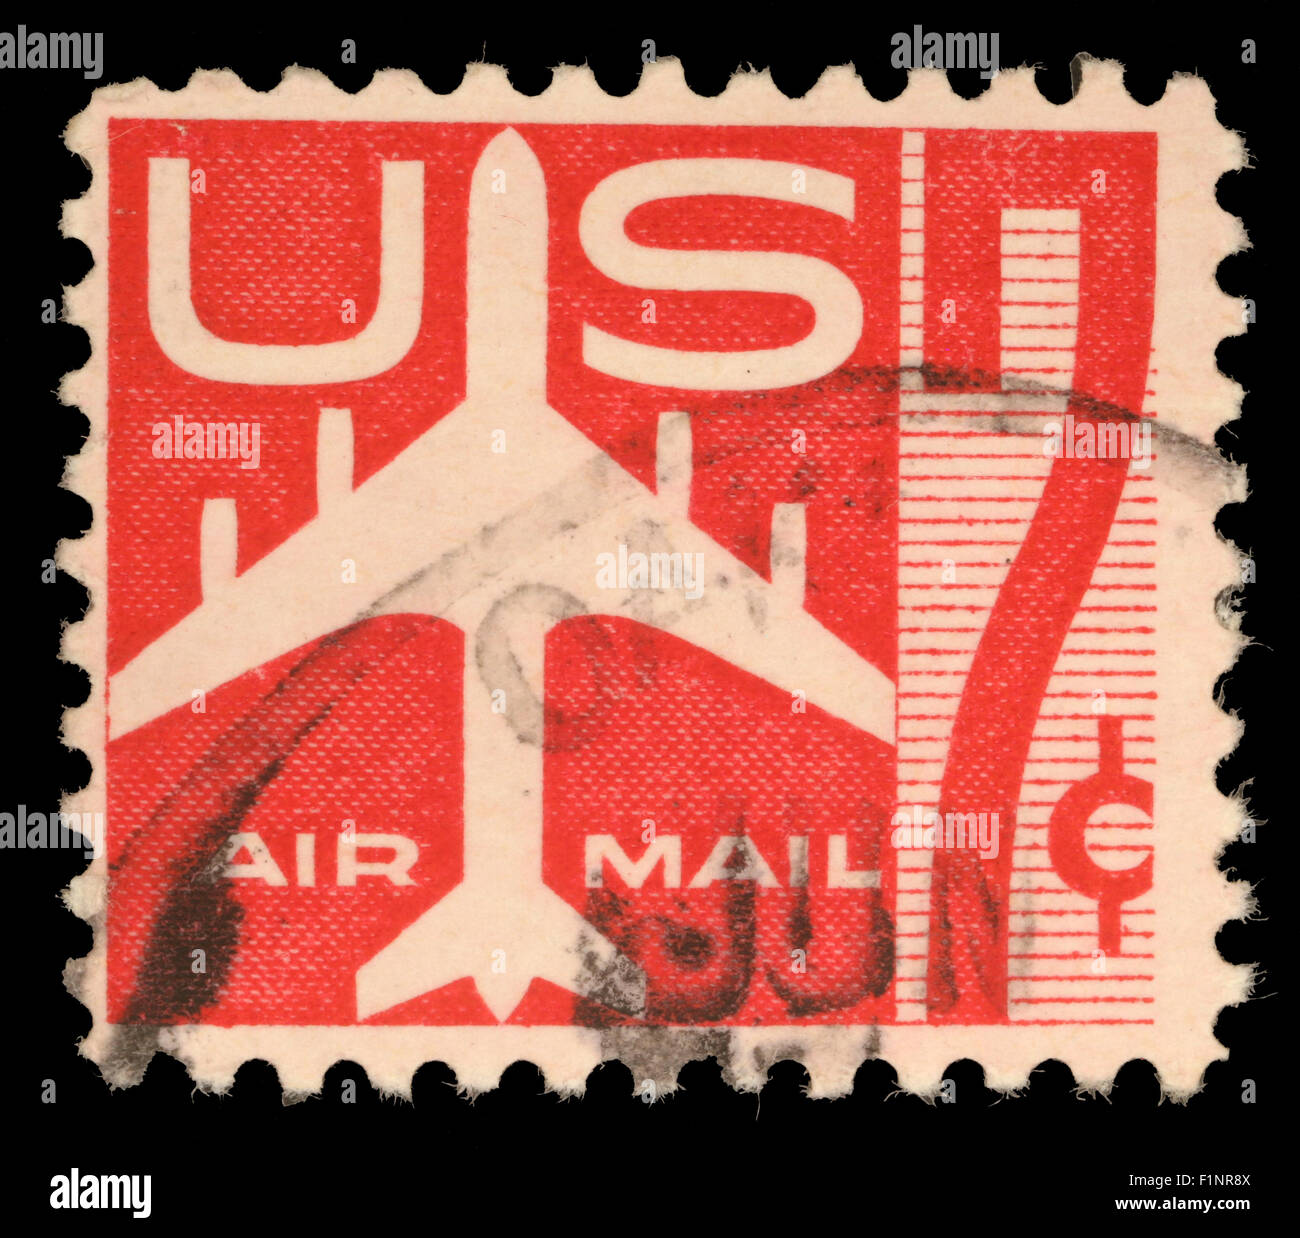 Stati Uniti francobollo del valore di 7c utilizzato per aria d'oltremare le consegne di posta che mostra la posta di aria simboli Foto Stock